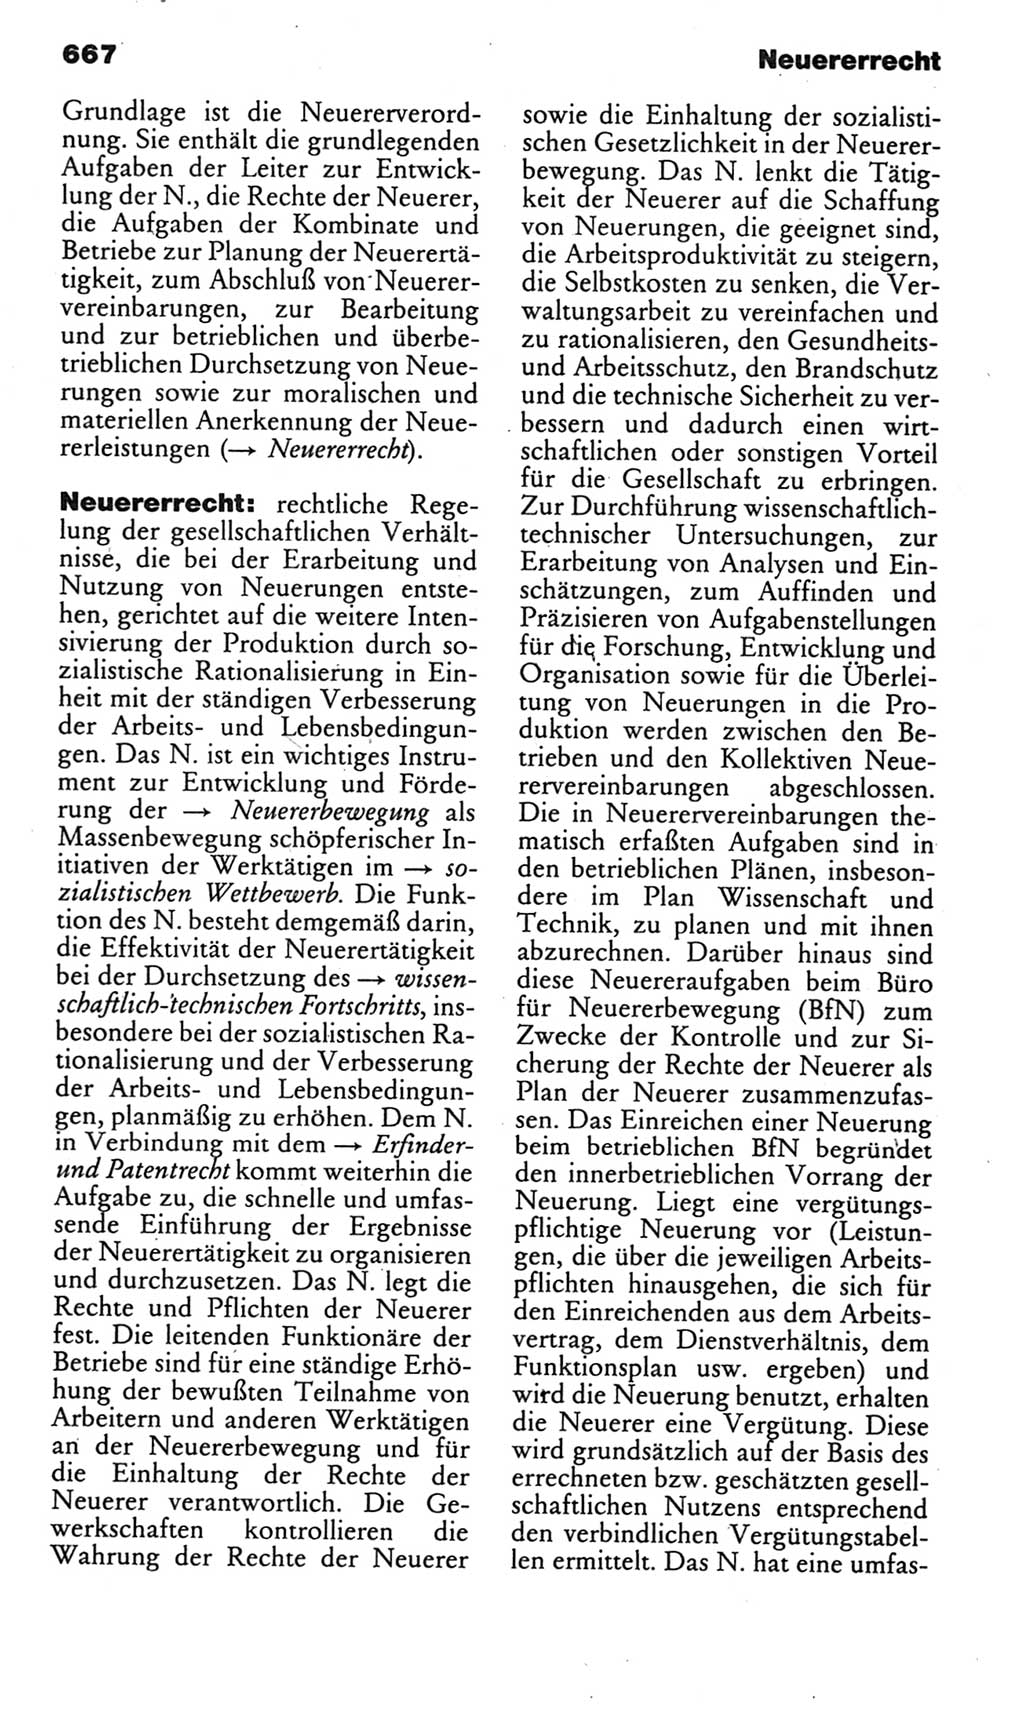 Kleines politisches Wörterbuch [Deutsche Demokratische Republik (DDR)] 1985, Seite 667 (Kl. pol. Wb. DDR 1985, S. 667)